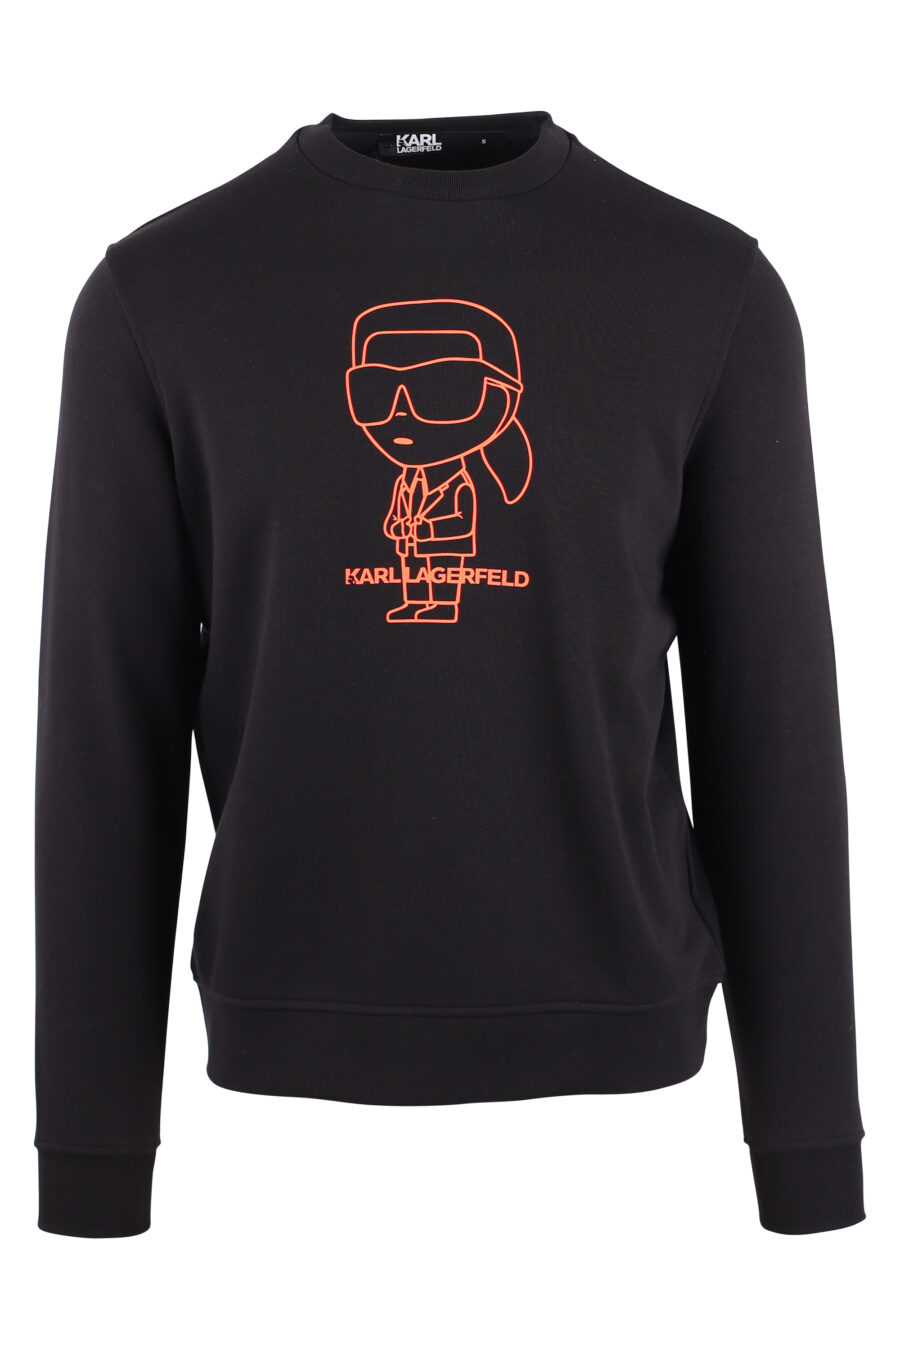 Schwarzes Sweatshirt mit Maxilogo "karl" in oranger Silhouette - IMG 9439